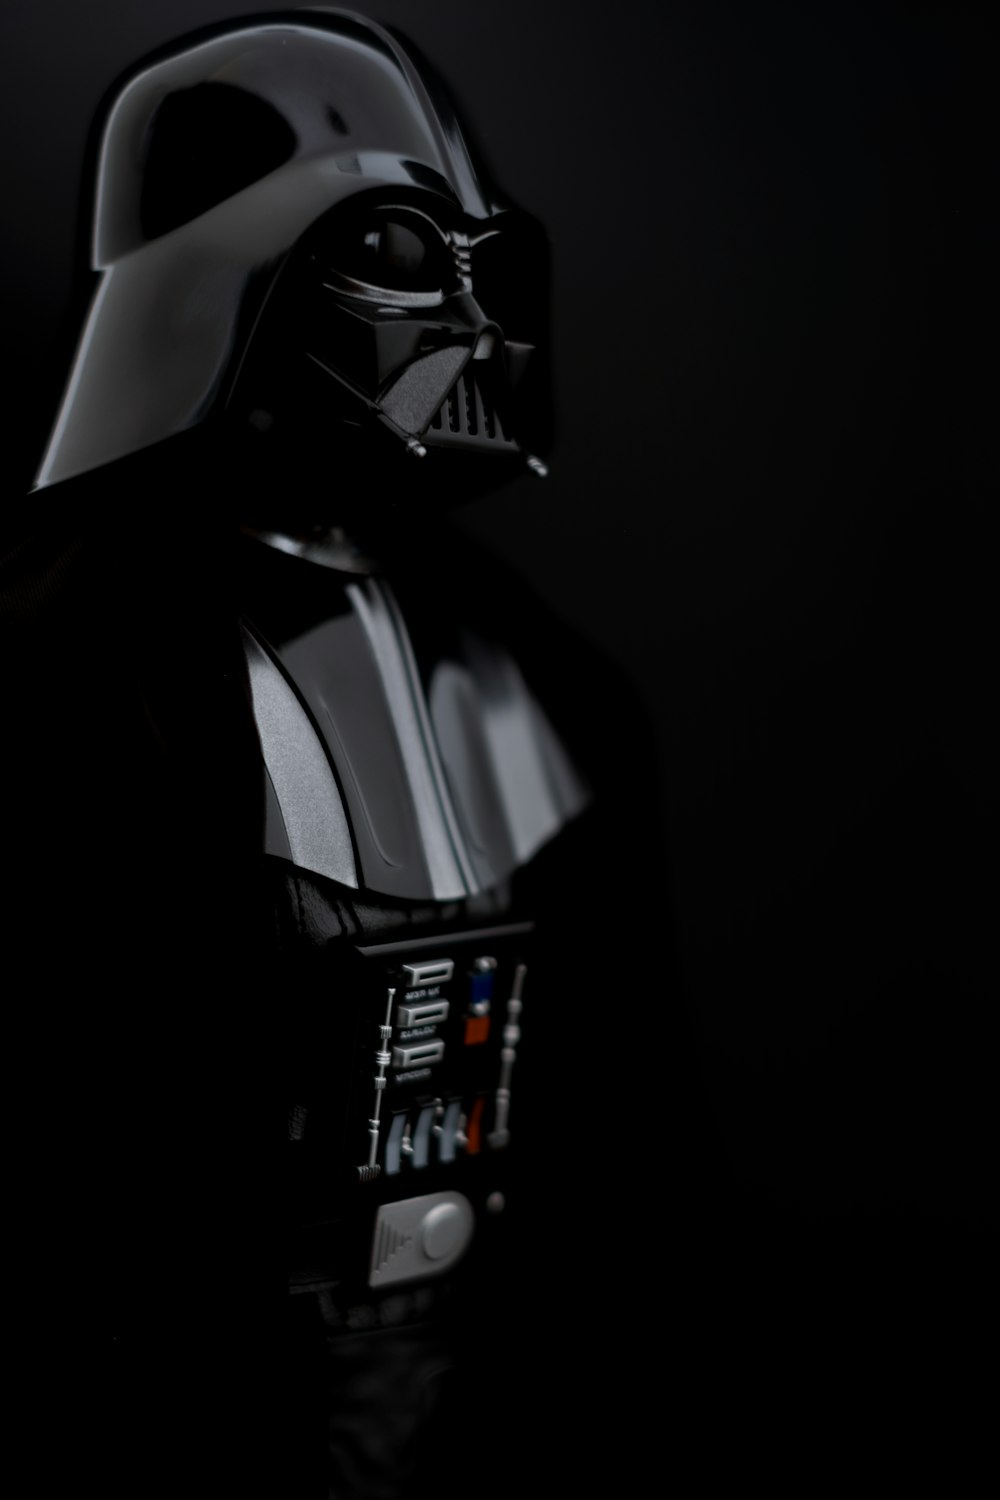 Star Wars Darth Vader wallpaper